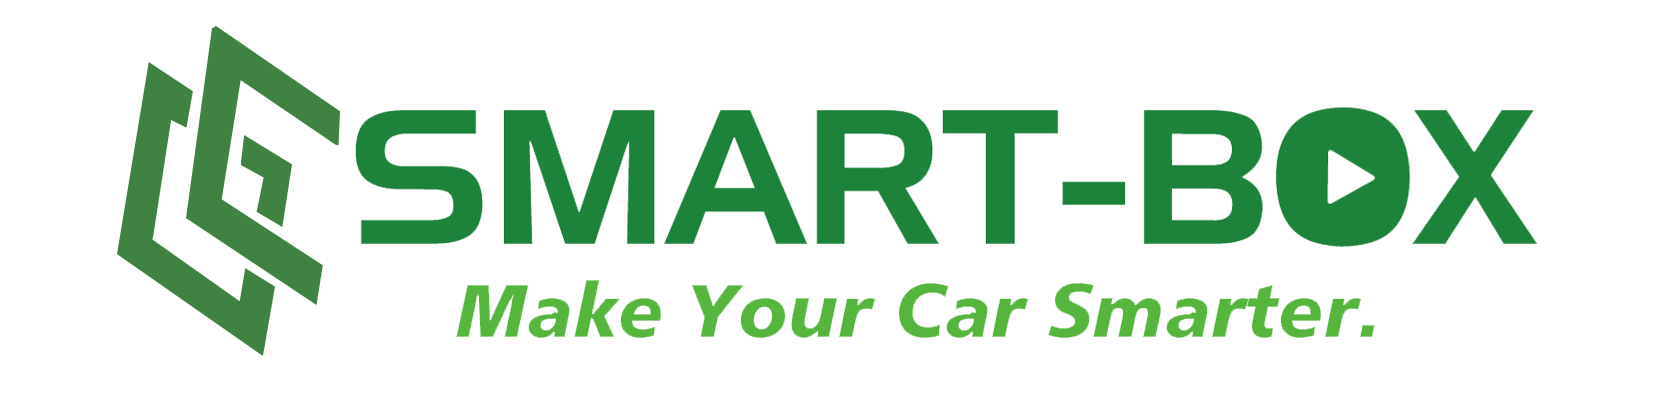 Car Smart Box Store Coupon Codes